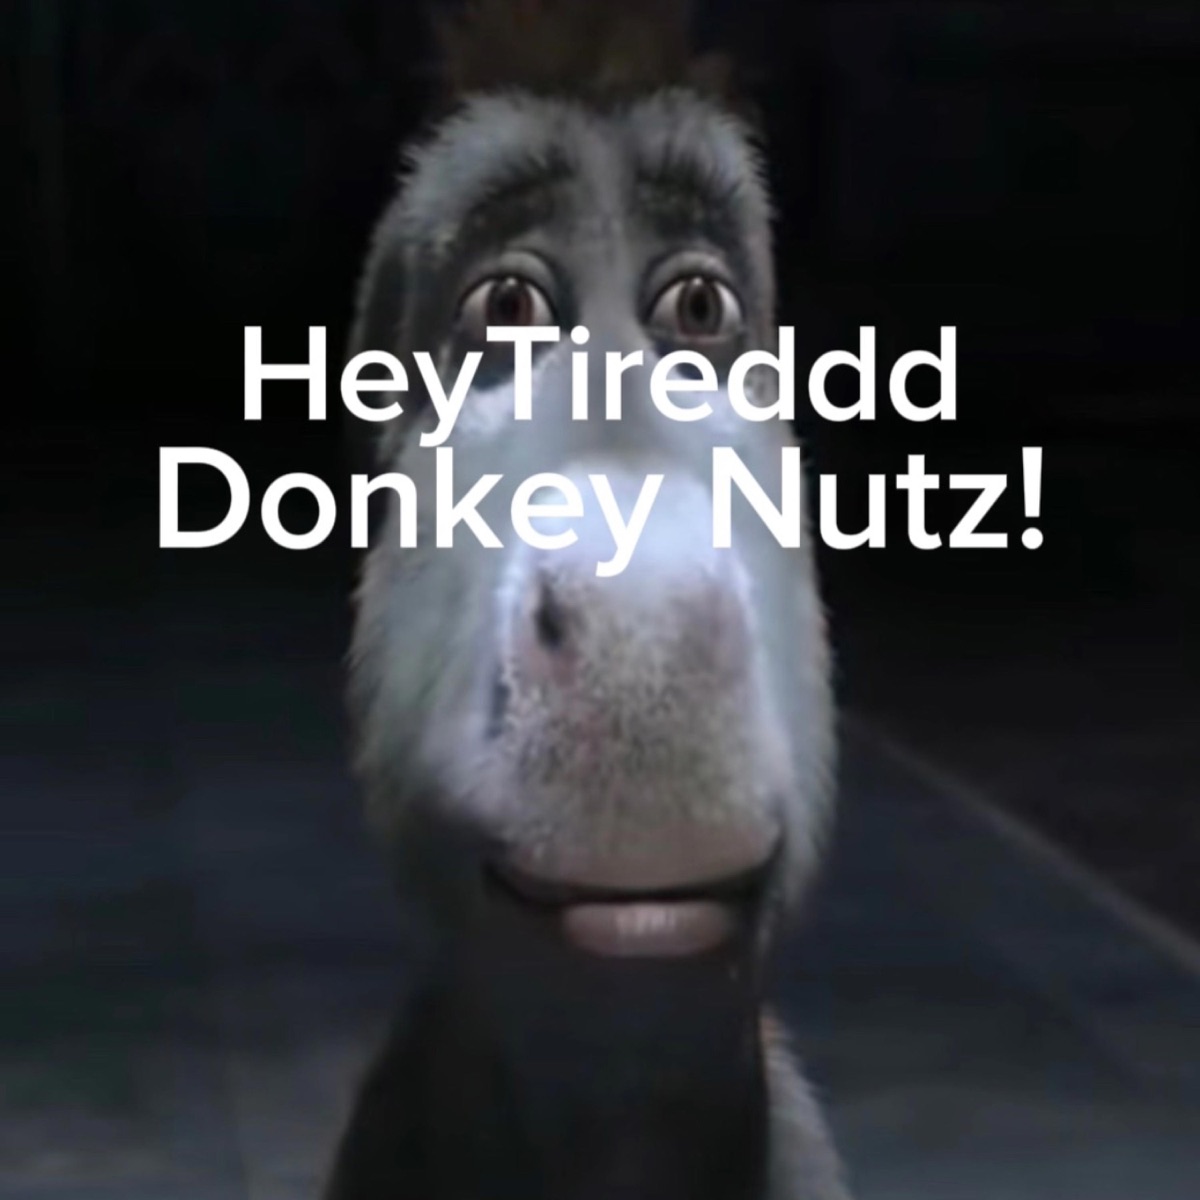 Donkey Nutz! - Single - Album by HeyTiredddd - Apple Music